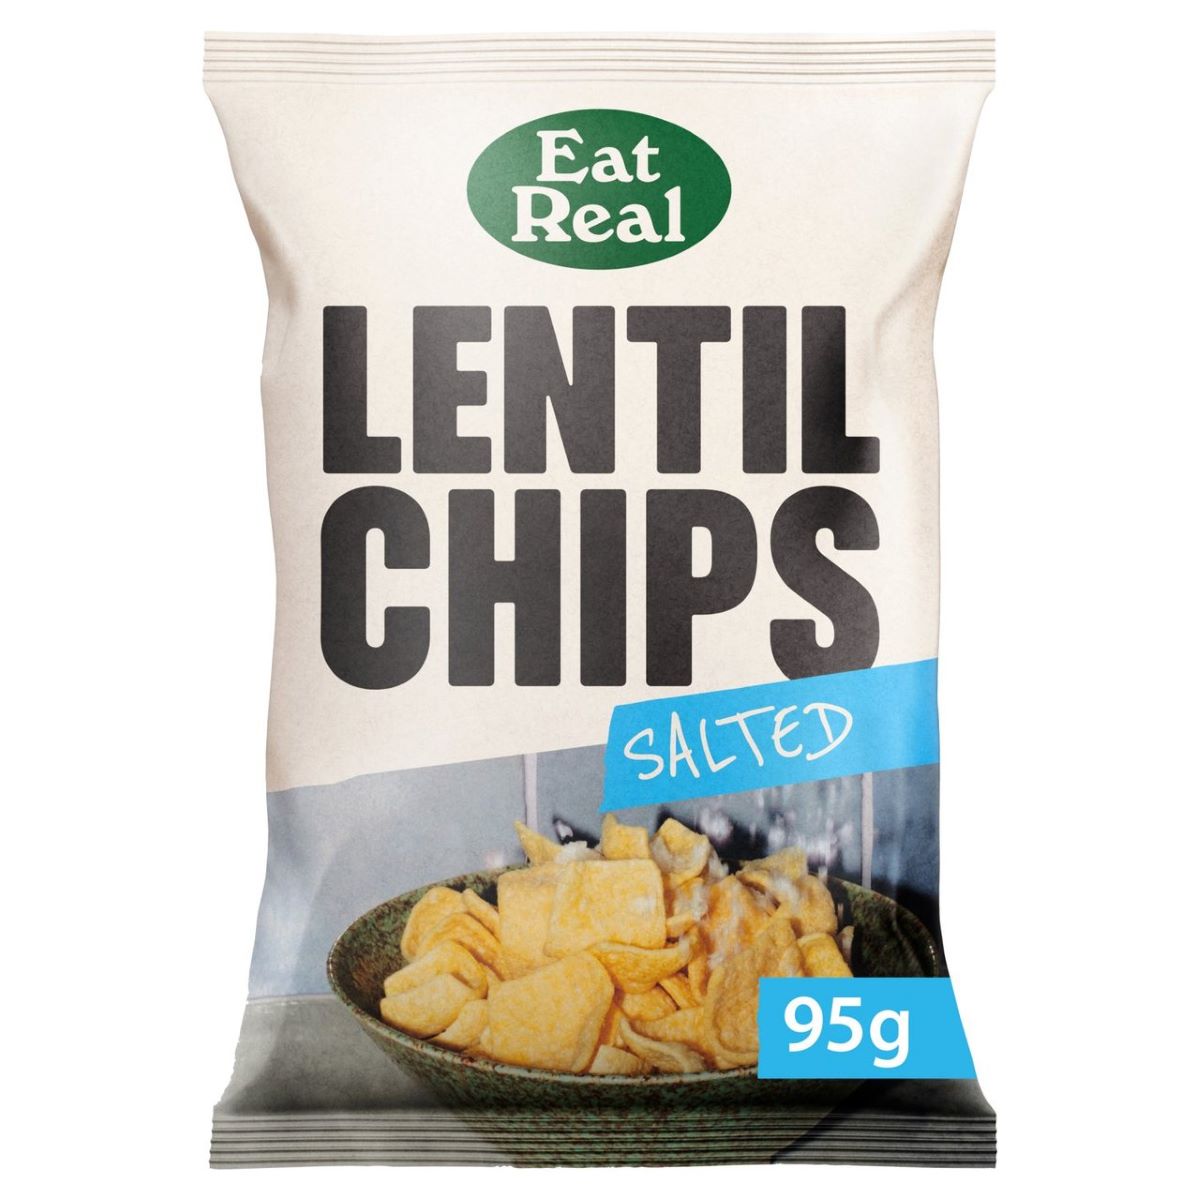 Eat Real Lentil Chips Salted 95g